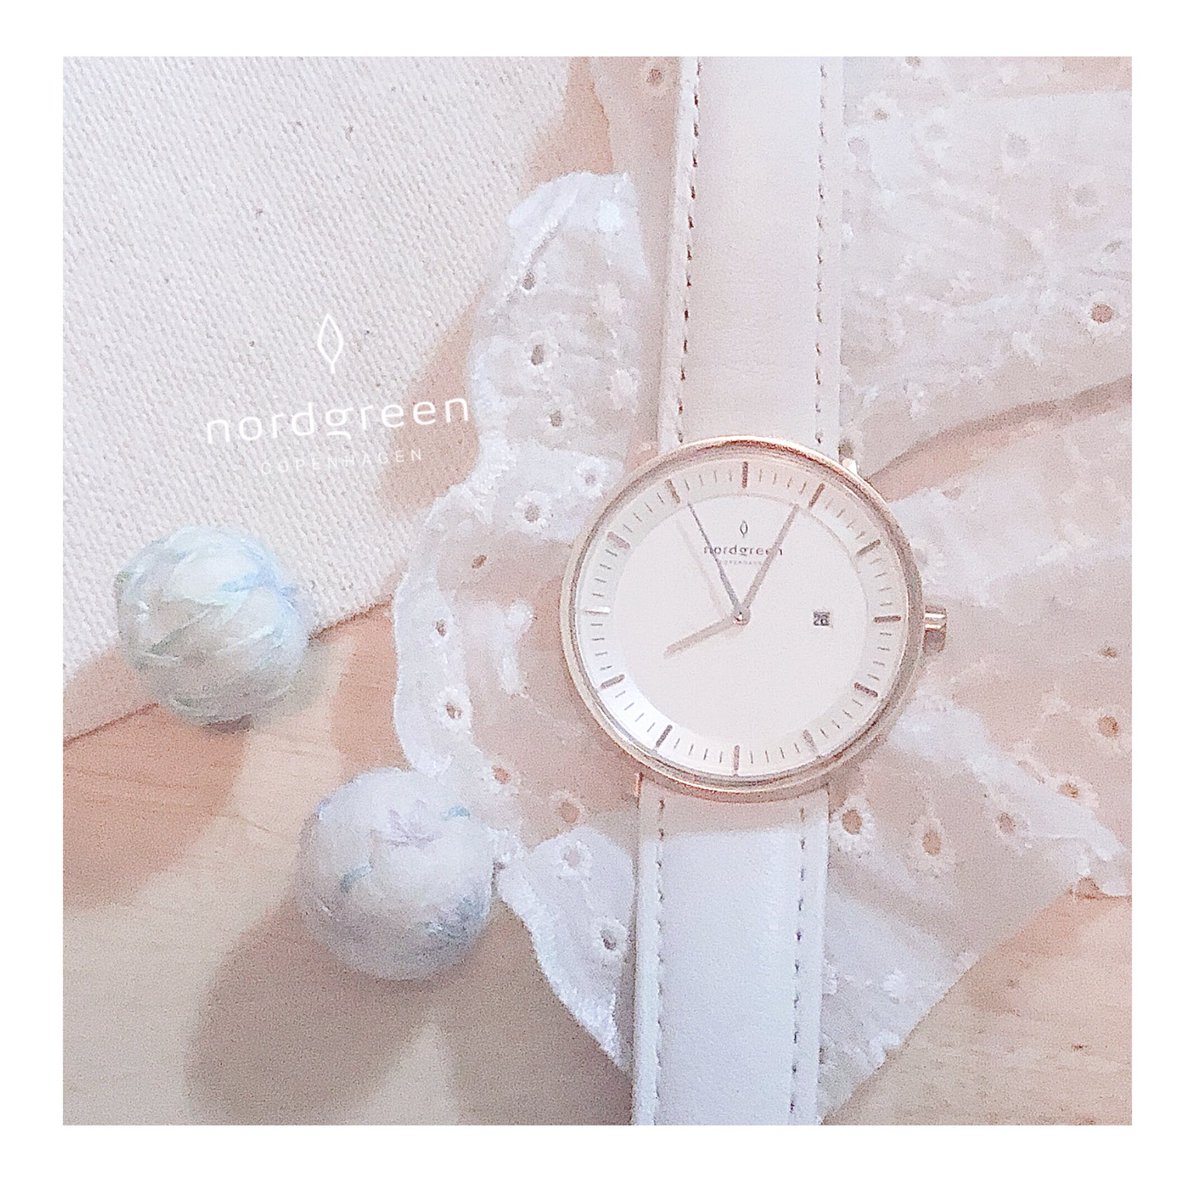 Nordgreen様より頂いた素敵な腕時計☁️

シンプルなデザインでどんな服装にも合うのでお気に入りです!

 #Nordgreen  #ノードグリーン 